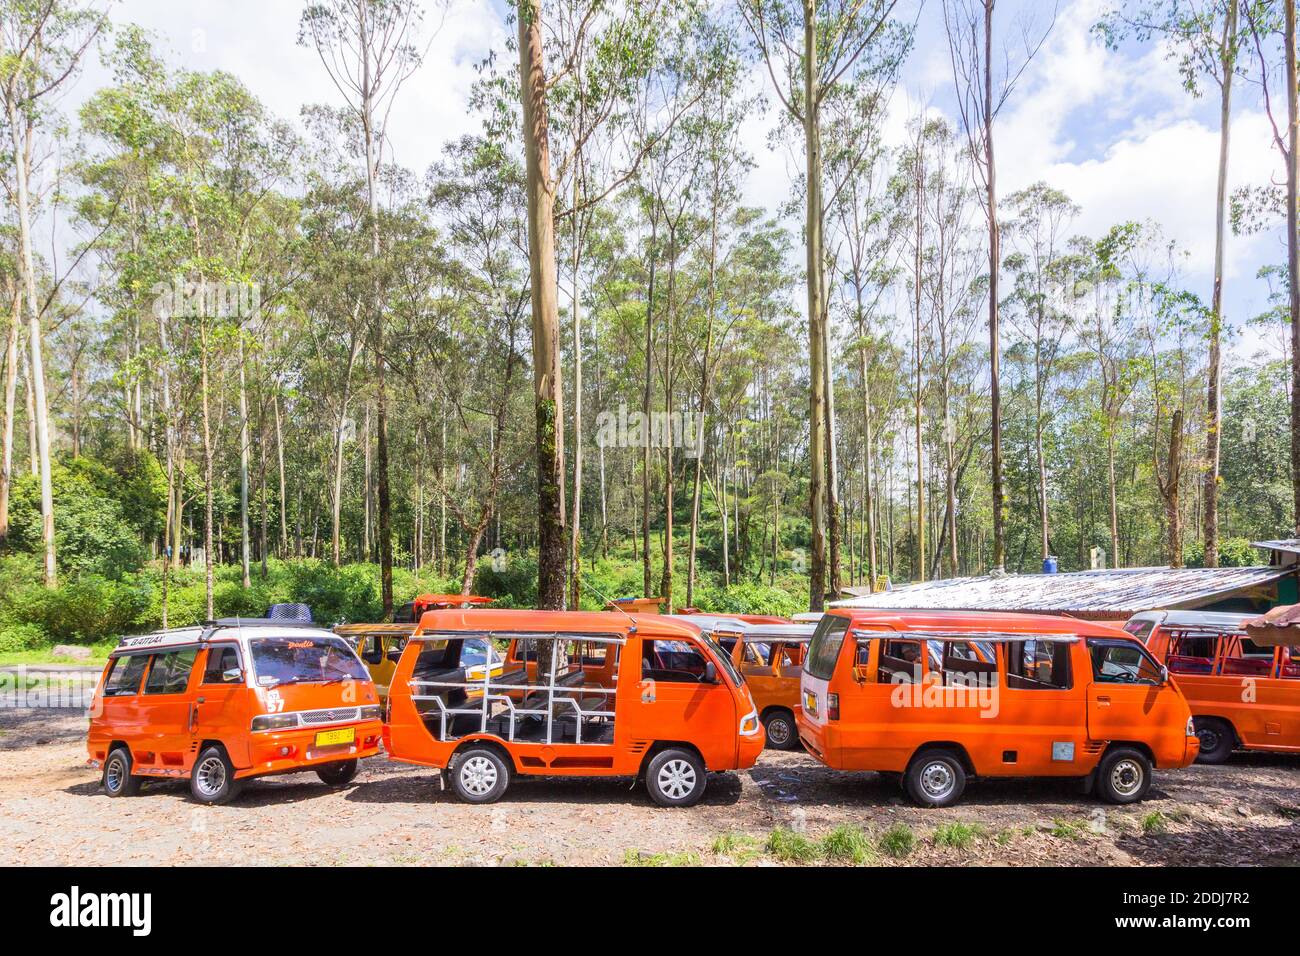 Taxibuses locally called angkut at a parking lot in Kawah Putih, Bandung, Indonesia Stock Photo